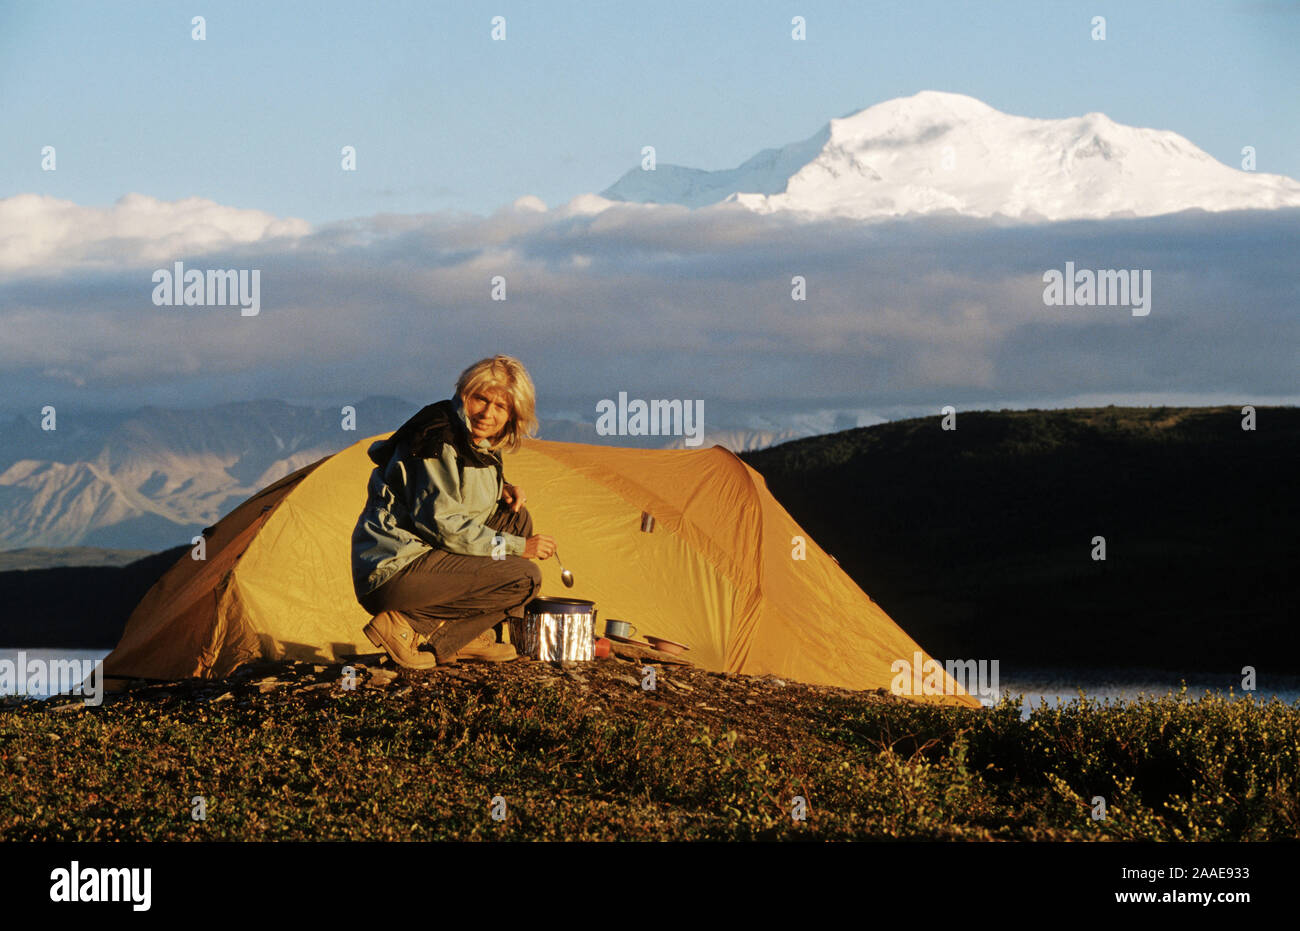 Campen vor dem höchsten Berg Nordamerikas, dem Mt. McKinley im Denali N.P. - Alaska Foto Stock